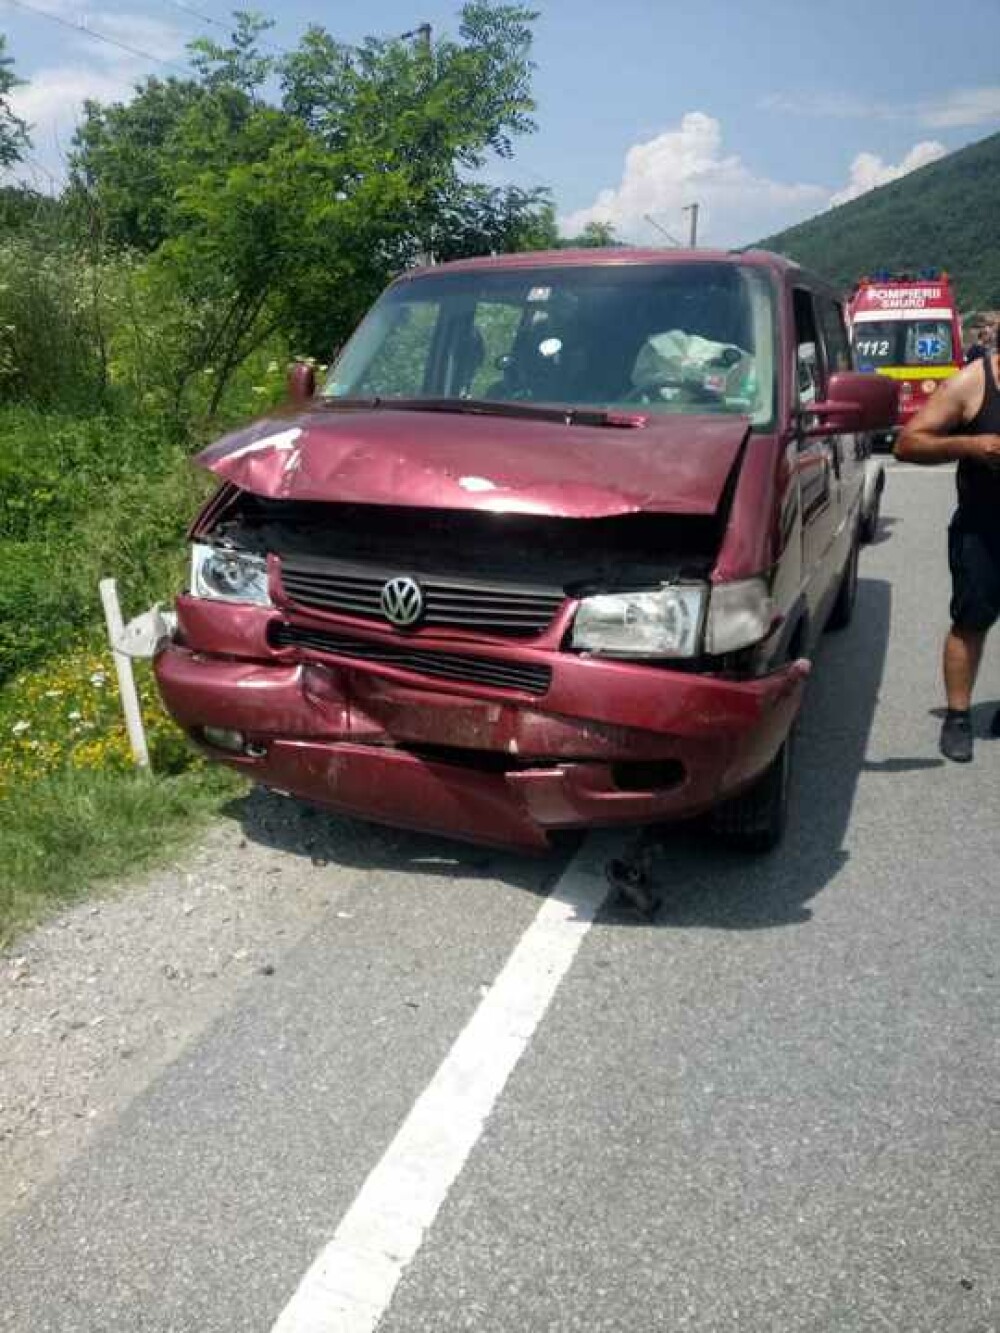 Accident cu 13 persoane implicate, în Caraș Severin. A fost activat Planul roșu de intervenție - Imaginea 3